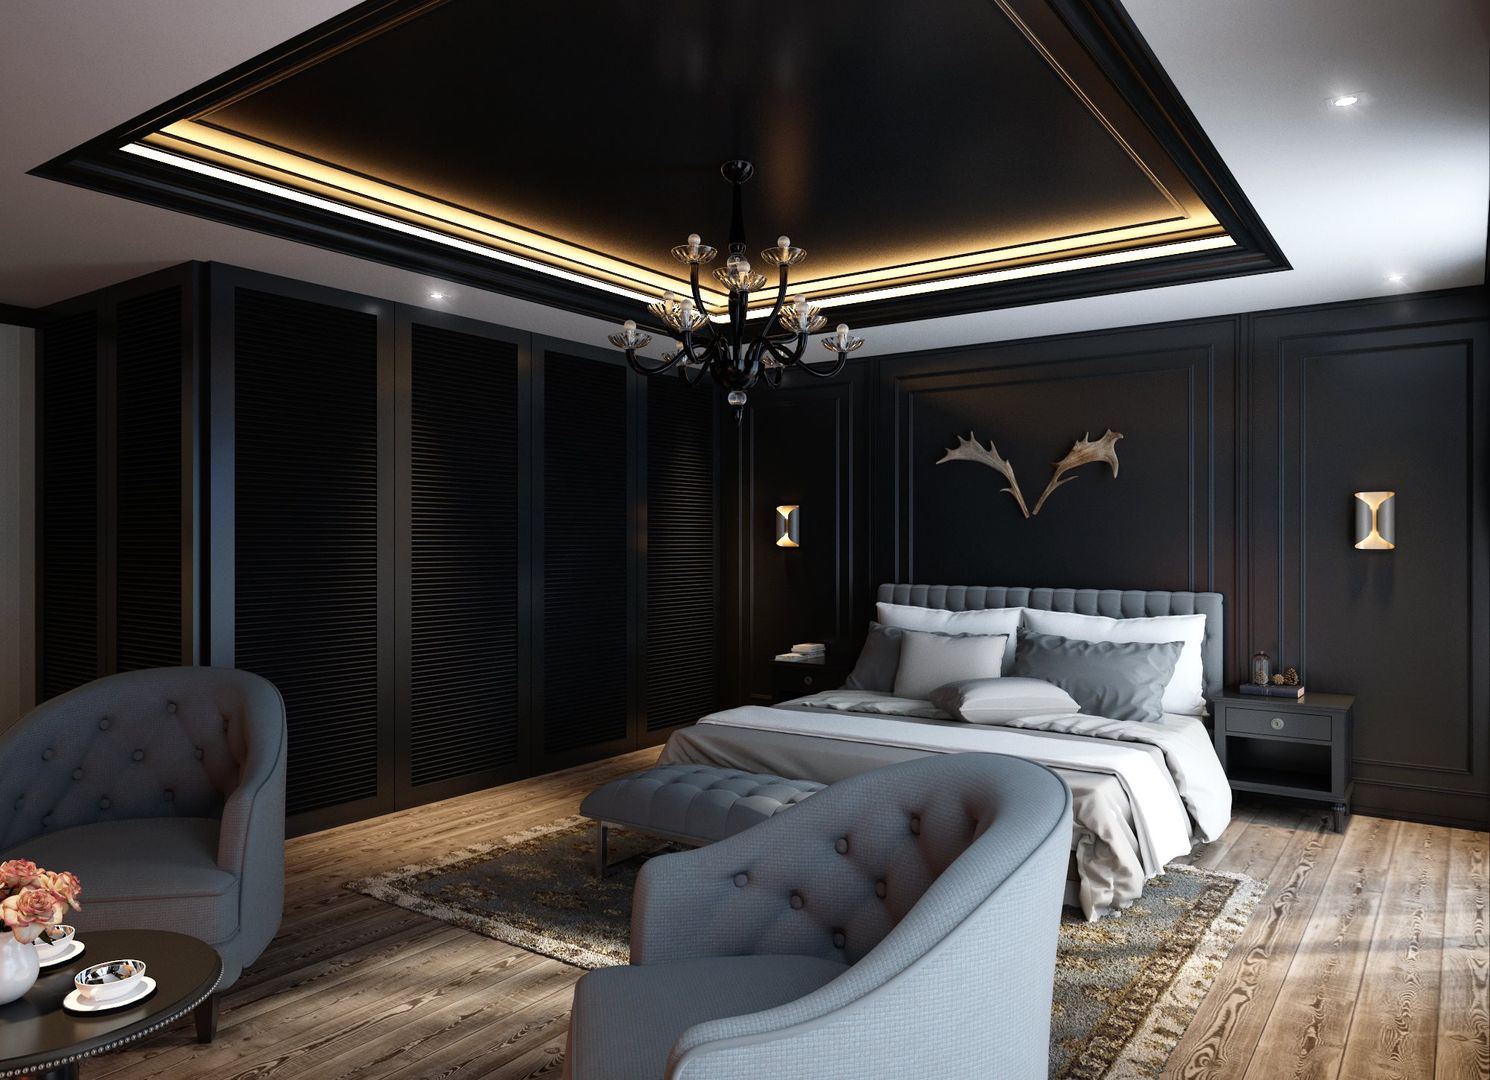 Avangard Yatak Odası, Cg Artist ibrahim ethem kısacık Cg Artist ibrahim ethem kısacık Rustic style bedroom Accessories & decoration